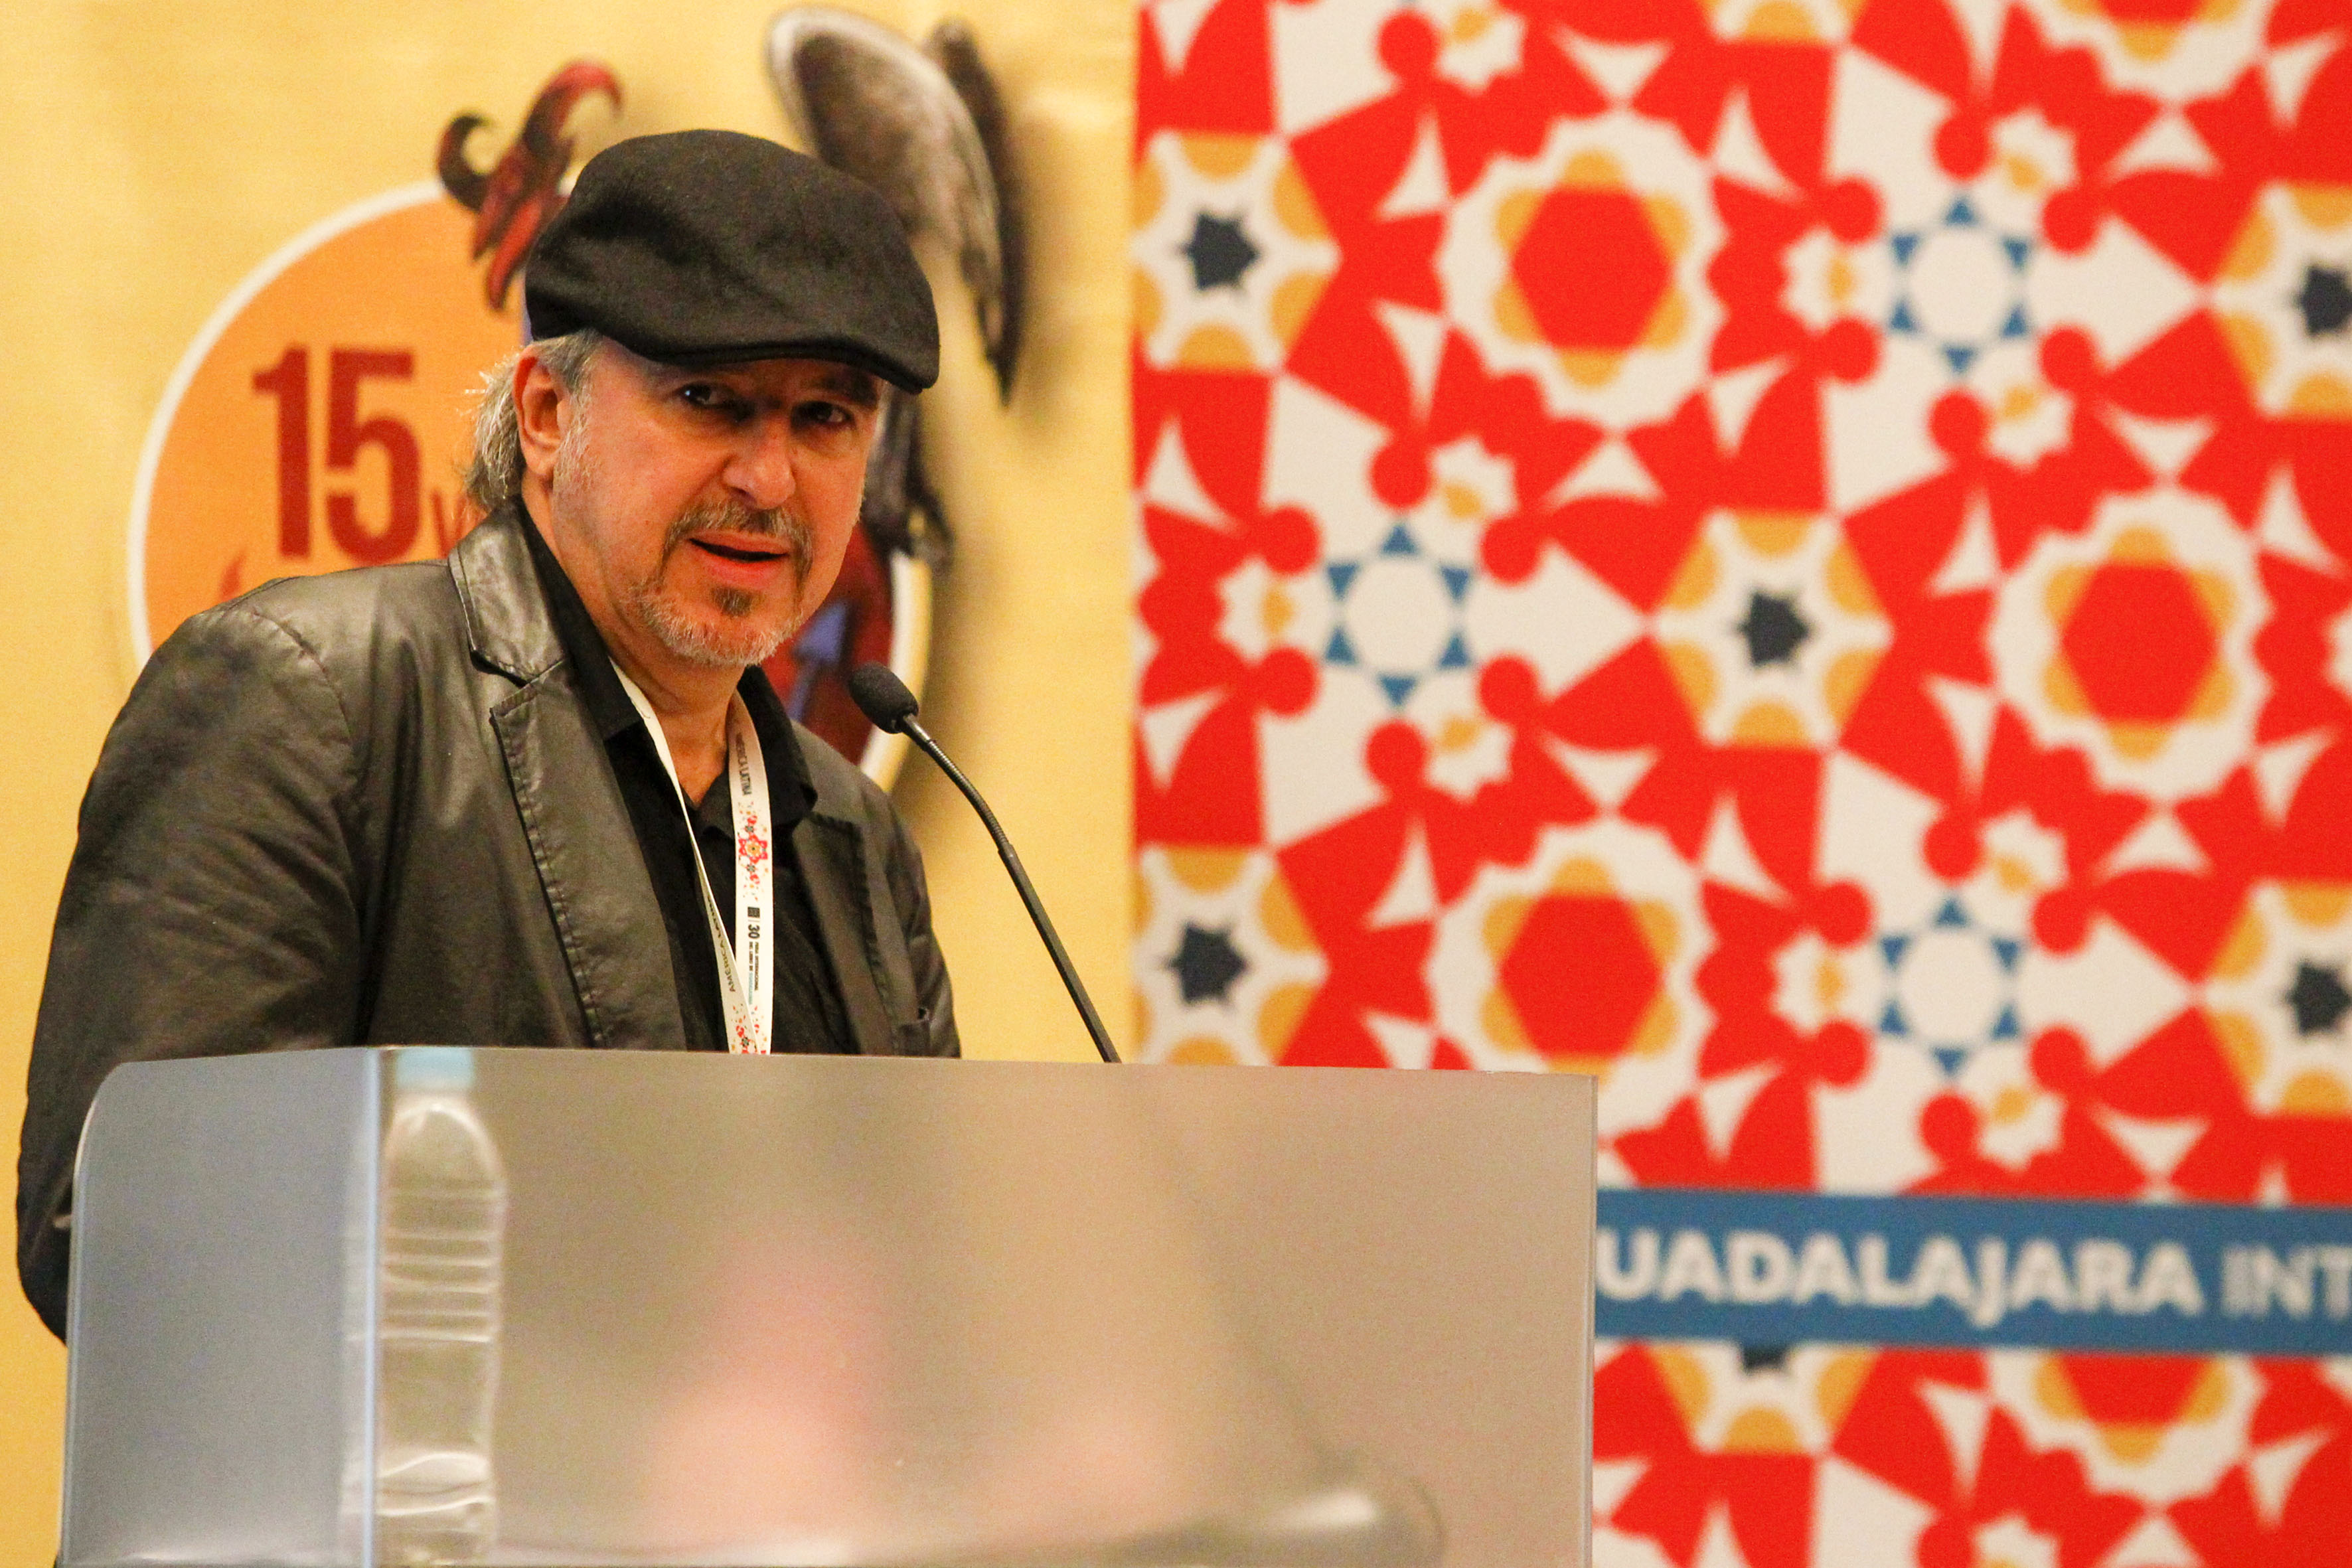 El caricaturista cubano Ángel Boligán, con micrófono en podium del evento, haciendo uso de la palabra.